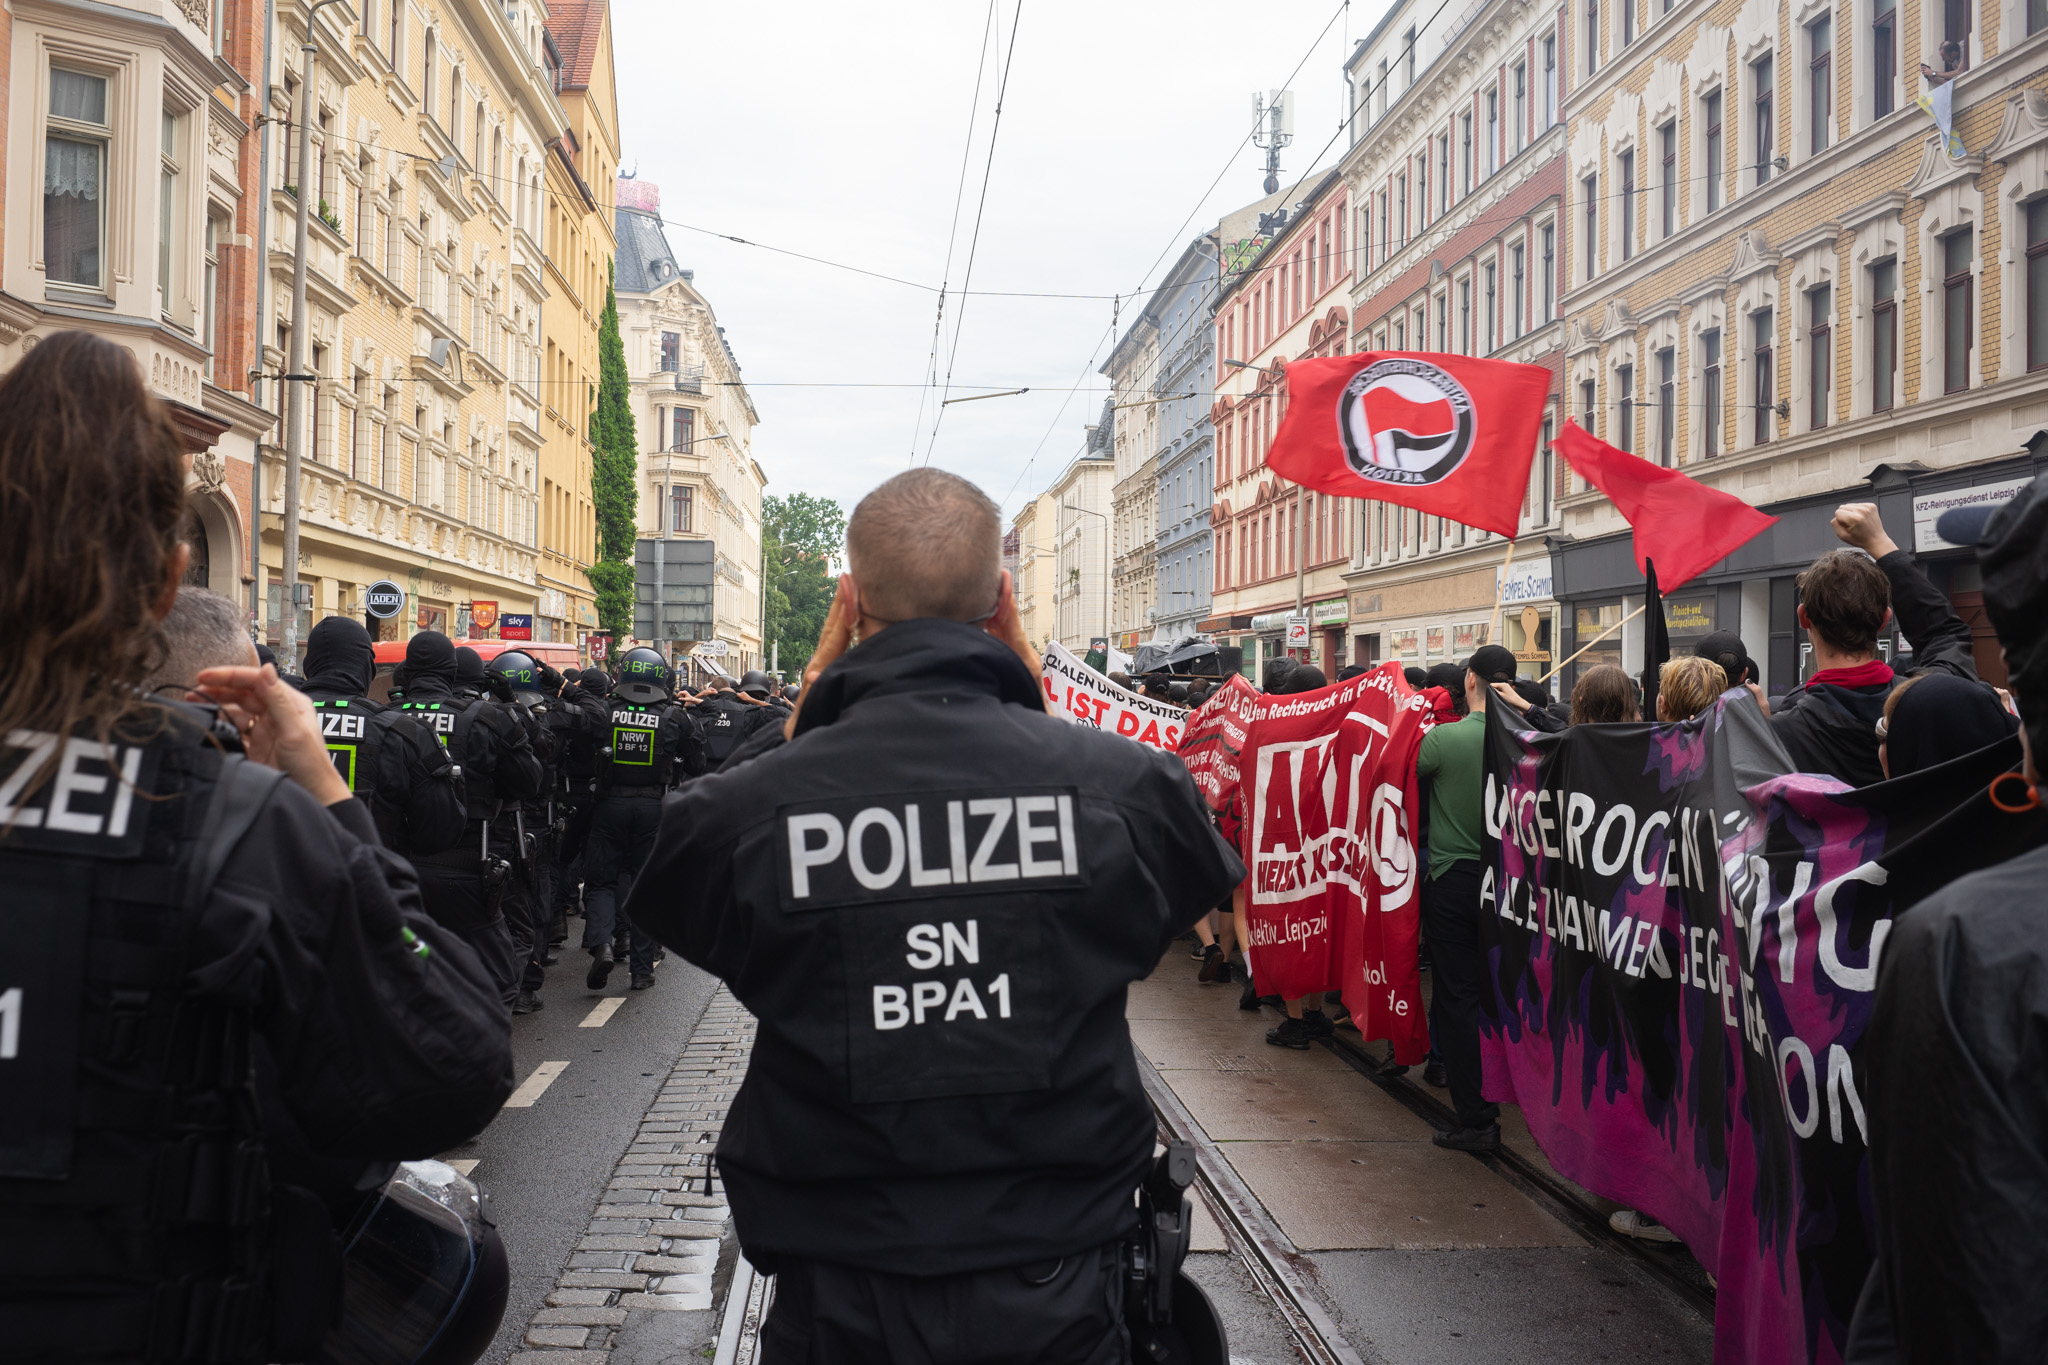   Für Maja auf die Straße | Nach der Auslieferung von Maja T. nach Ungarn wurde am vergangenen Samstag in Leipzig demonstriert  